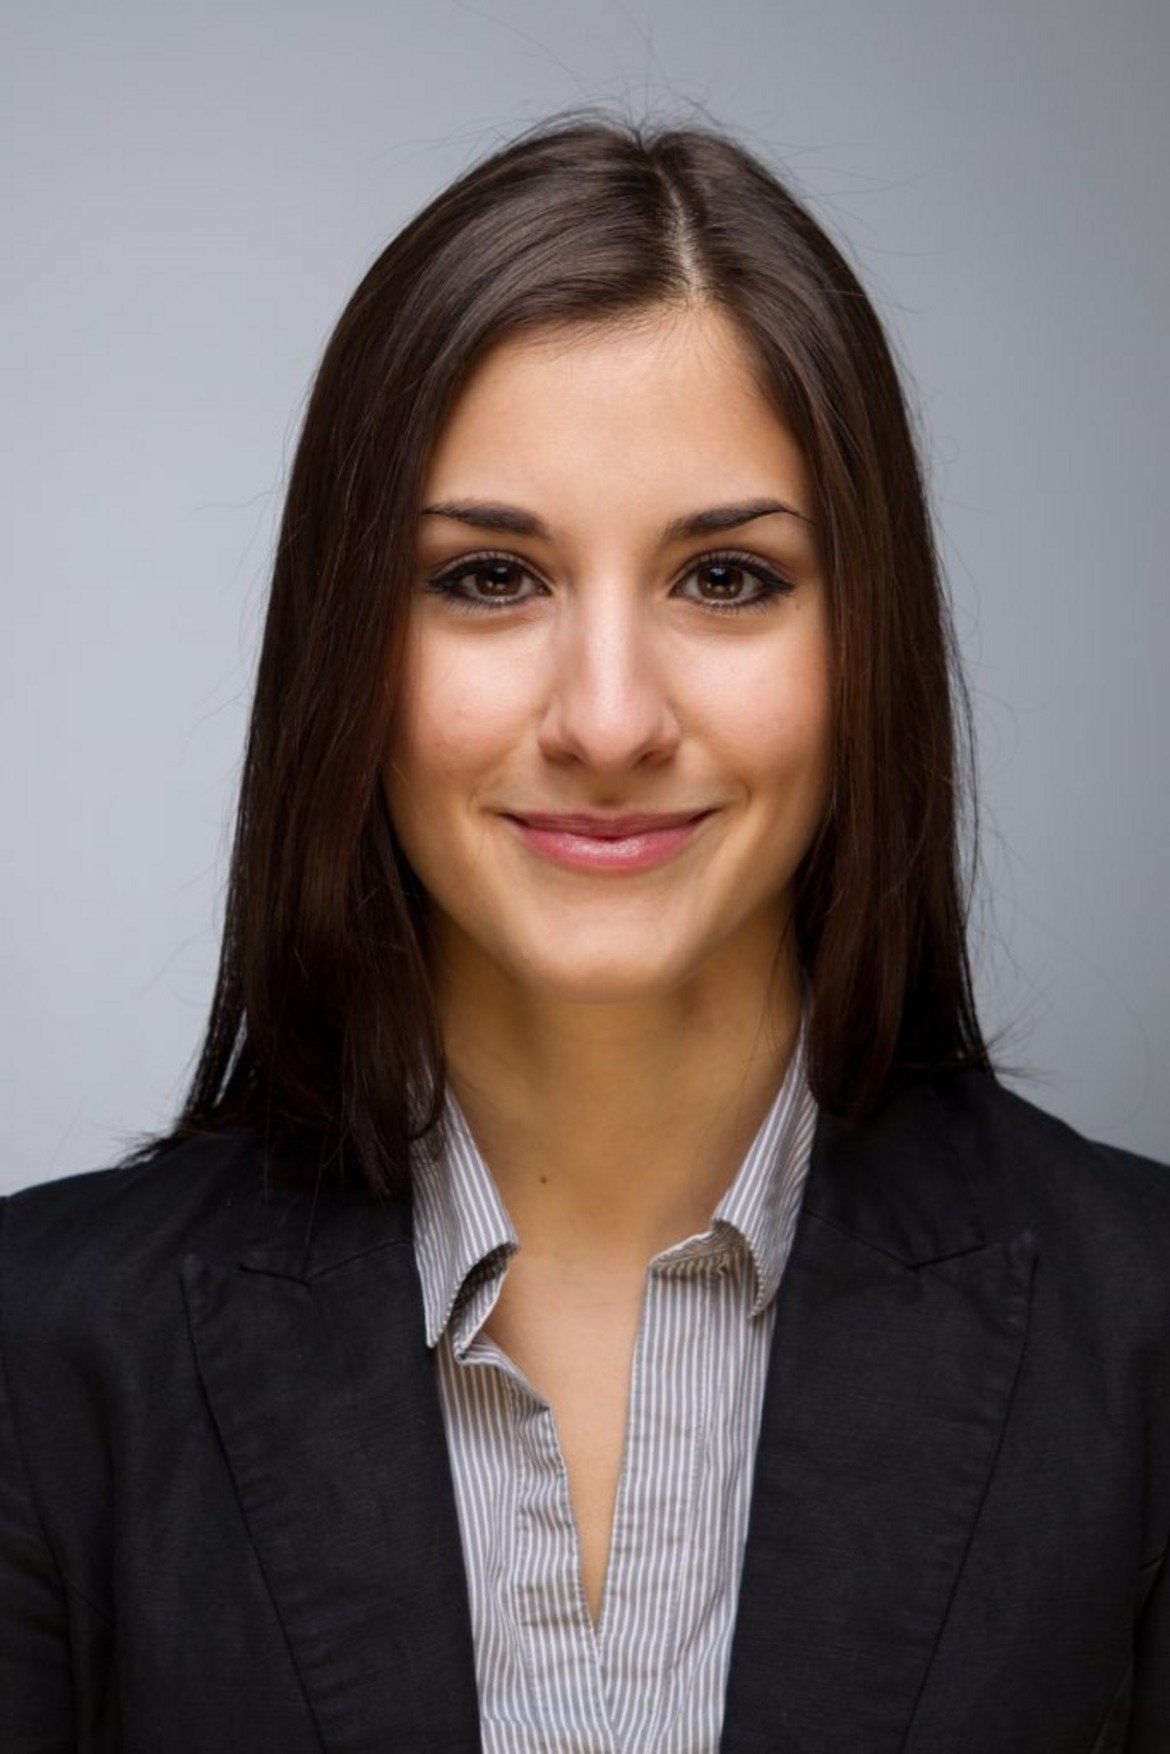 След като завършва обучението си в областта на бизнес администрацията и кариерата си в голяма корпорация в областта на финансите, Надя работи в StartUp компания за изграждане на връзки с инвеститори.